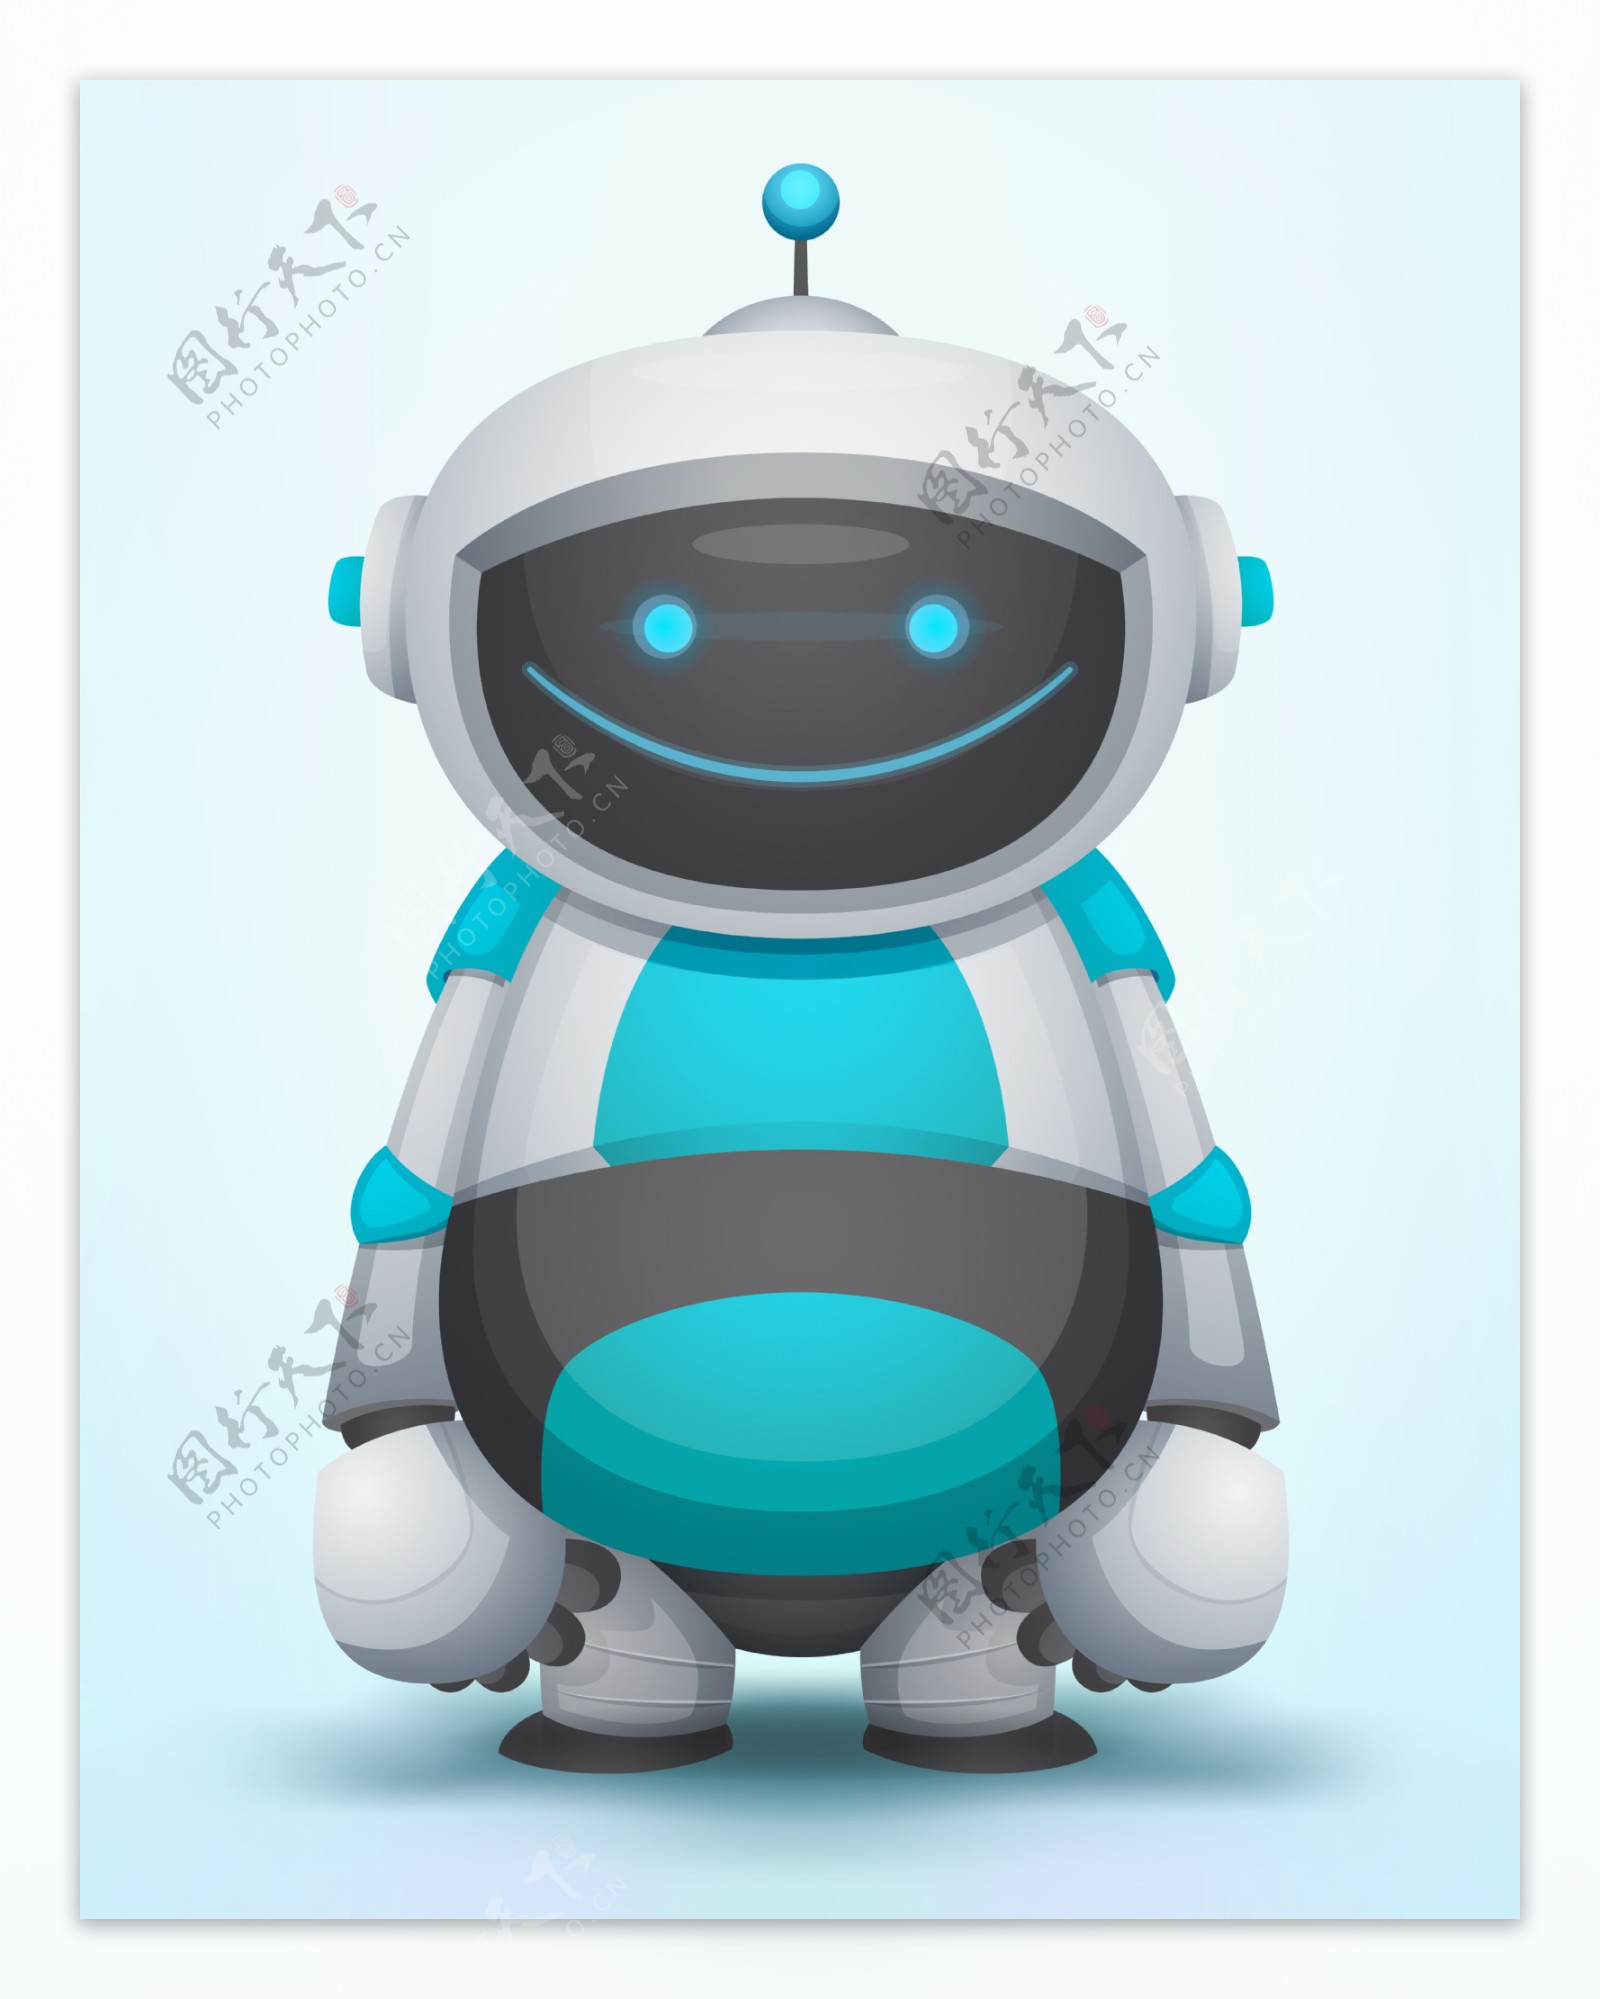 蓝灰色微笑的机器人